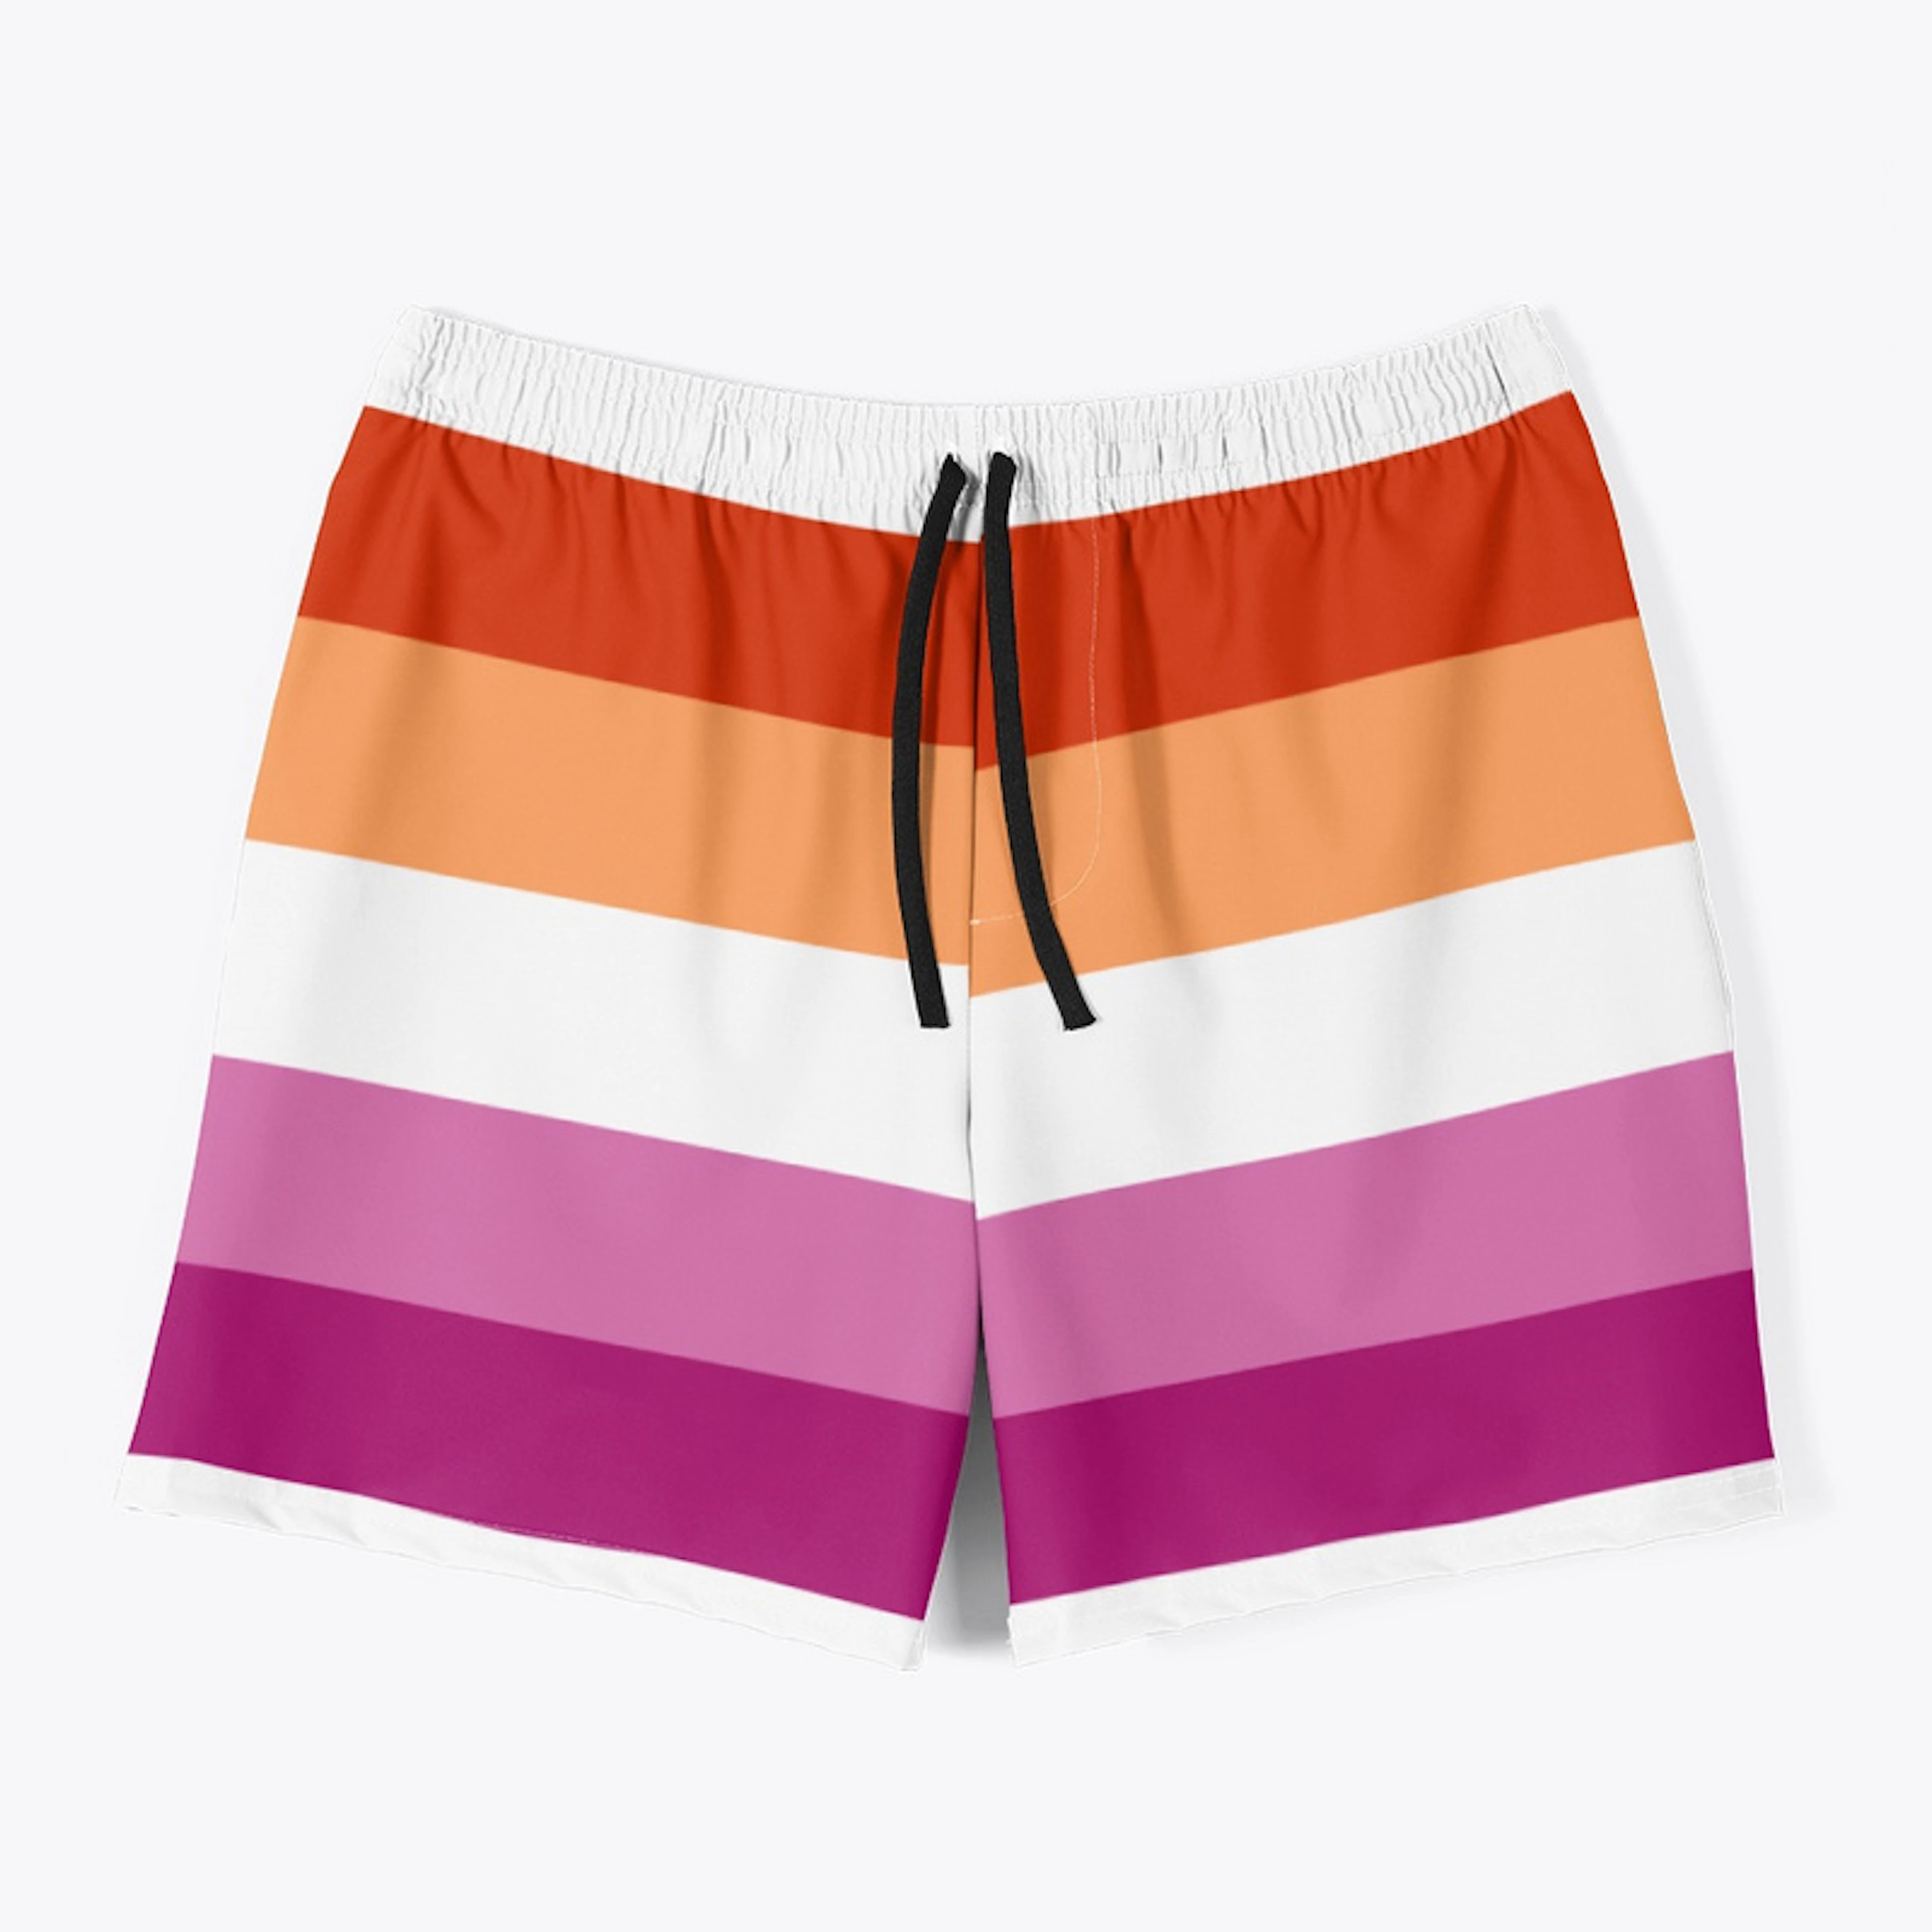 Lesbian Flag Shorts - Swim Trunks